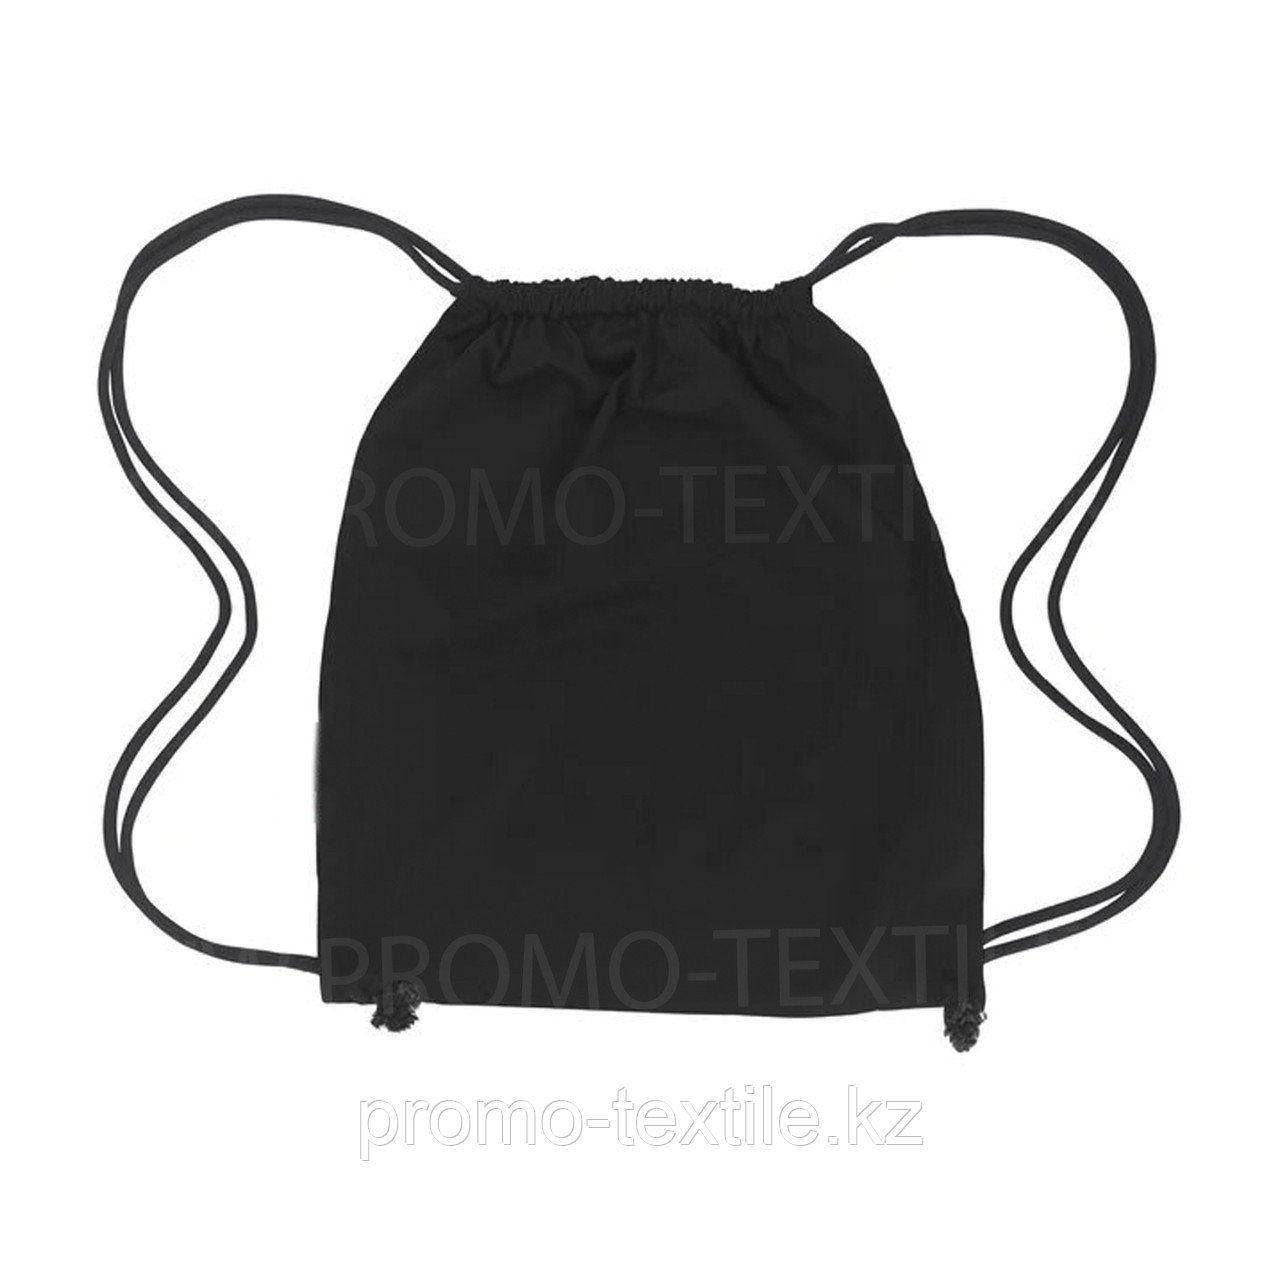 Рюкзак мешок  черного цвета | Черный сумка - рюкзак для сменной обуви